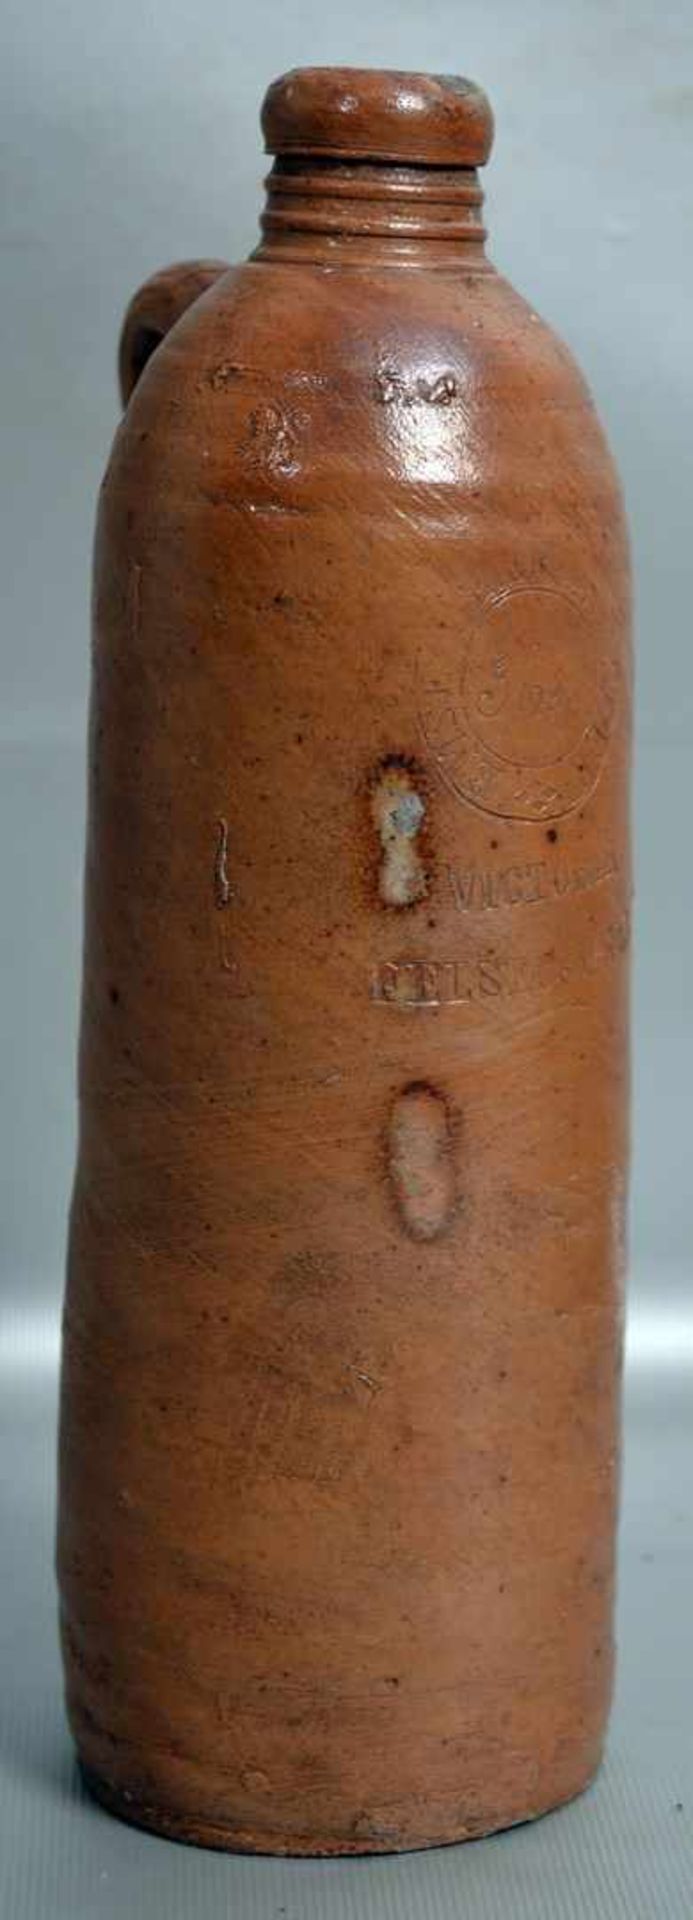 Wasserflasche rotbrauner Ton, mit Aufschrift Emser Mineralwasser, H 22 cm, 19. Jh.